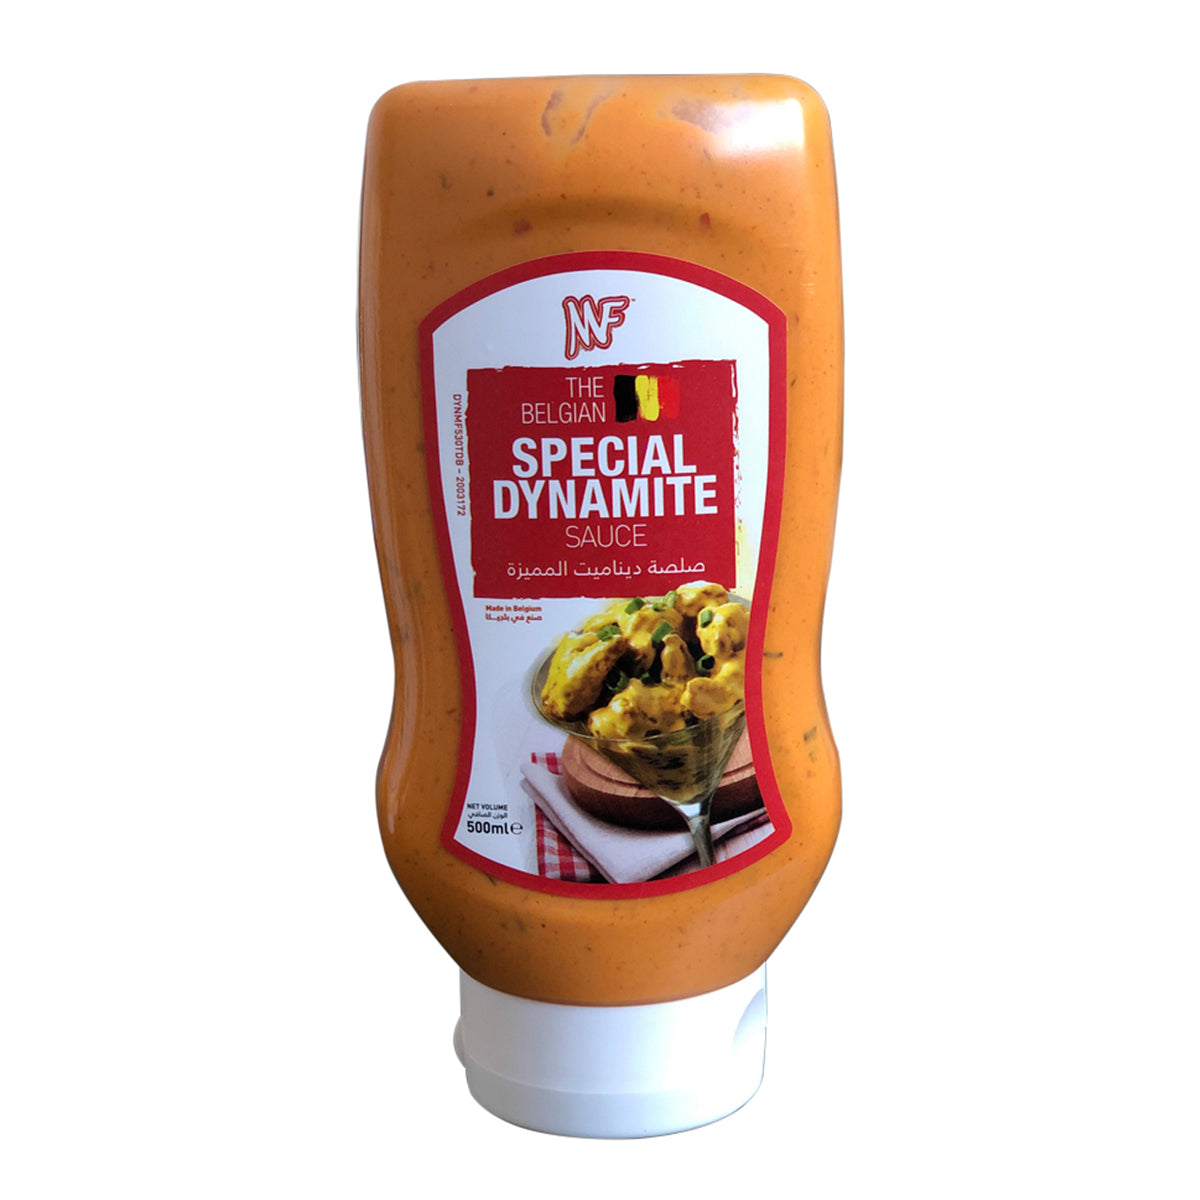 Daily Sauce Sauce Algerienne 350